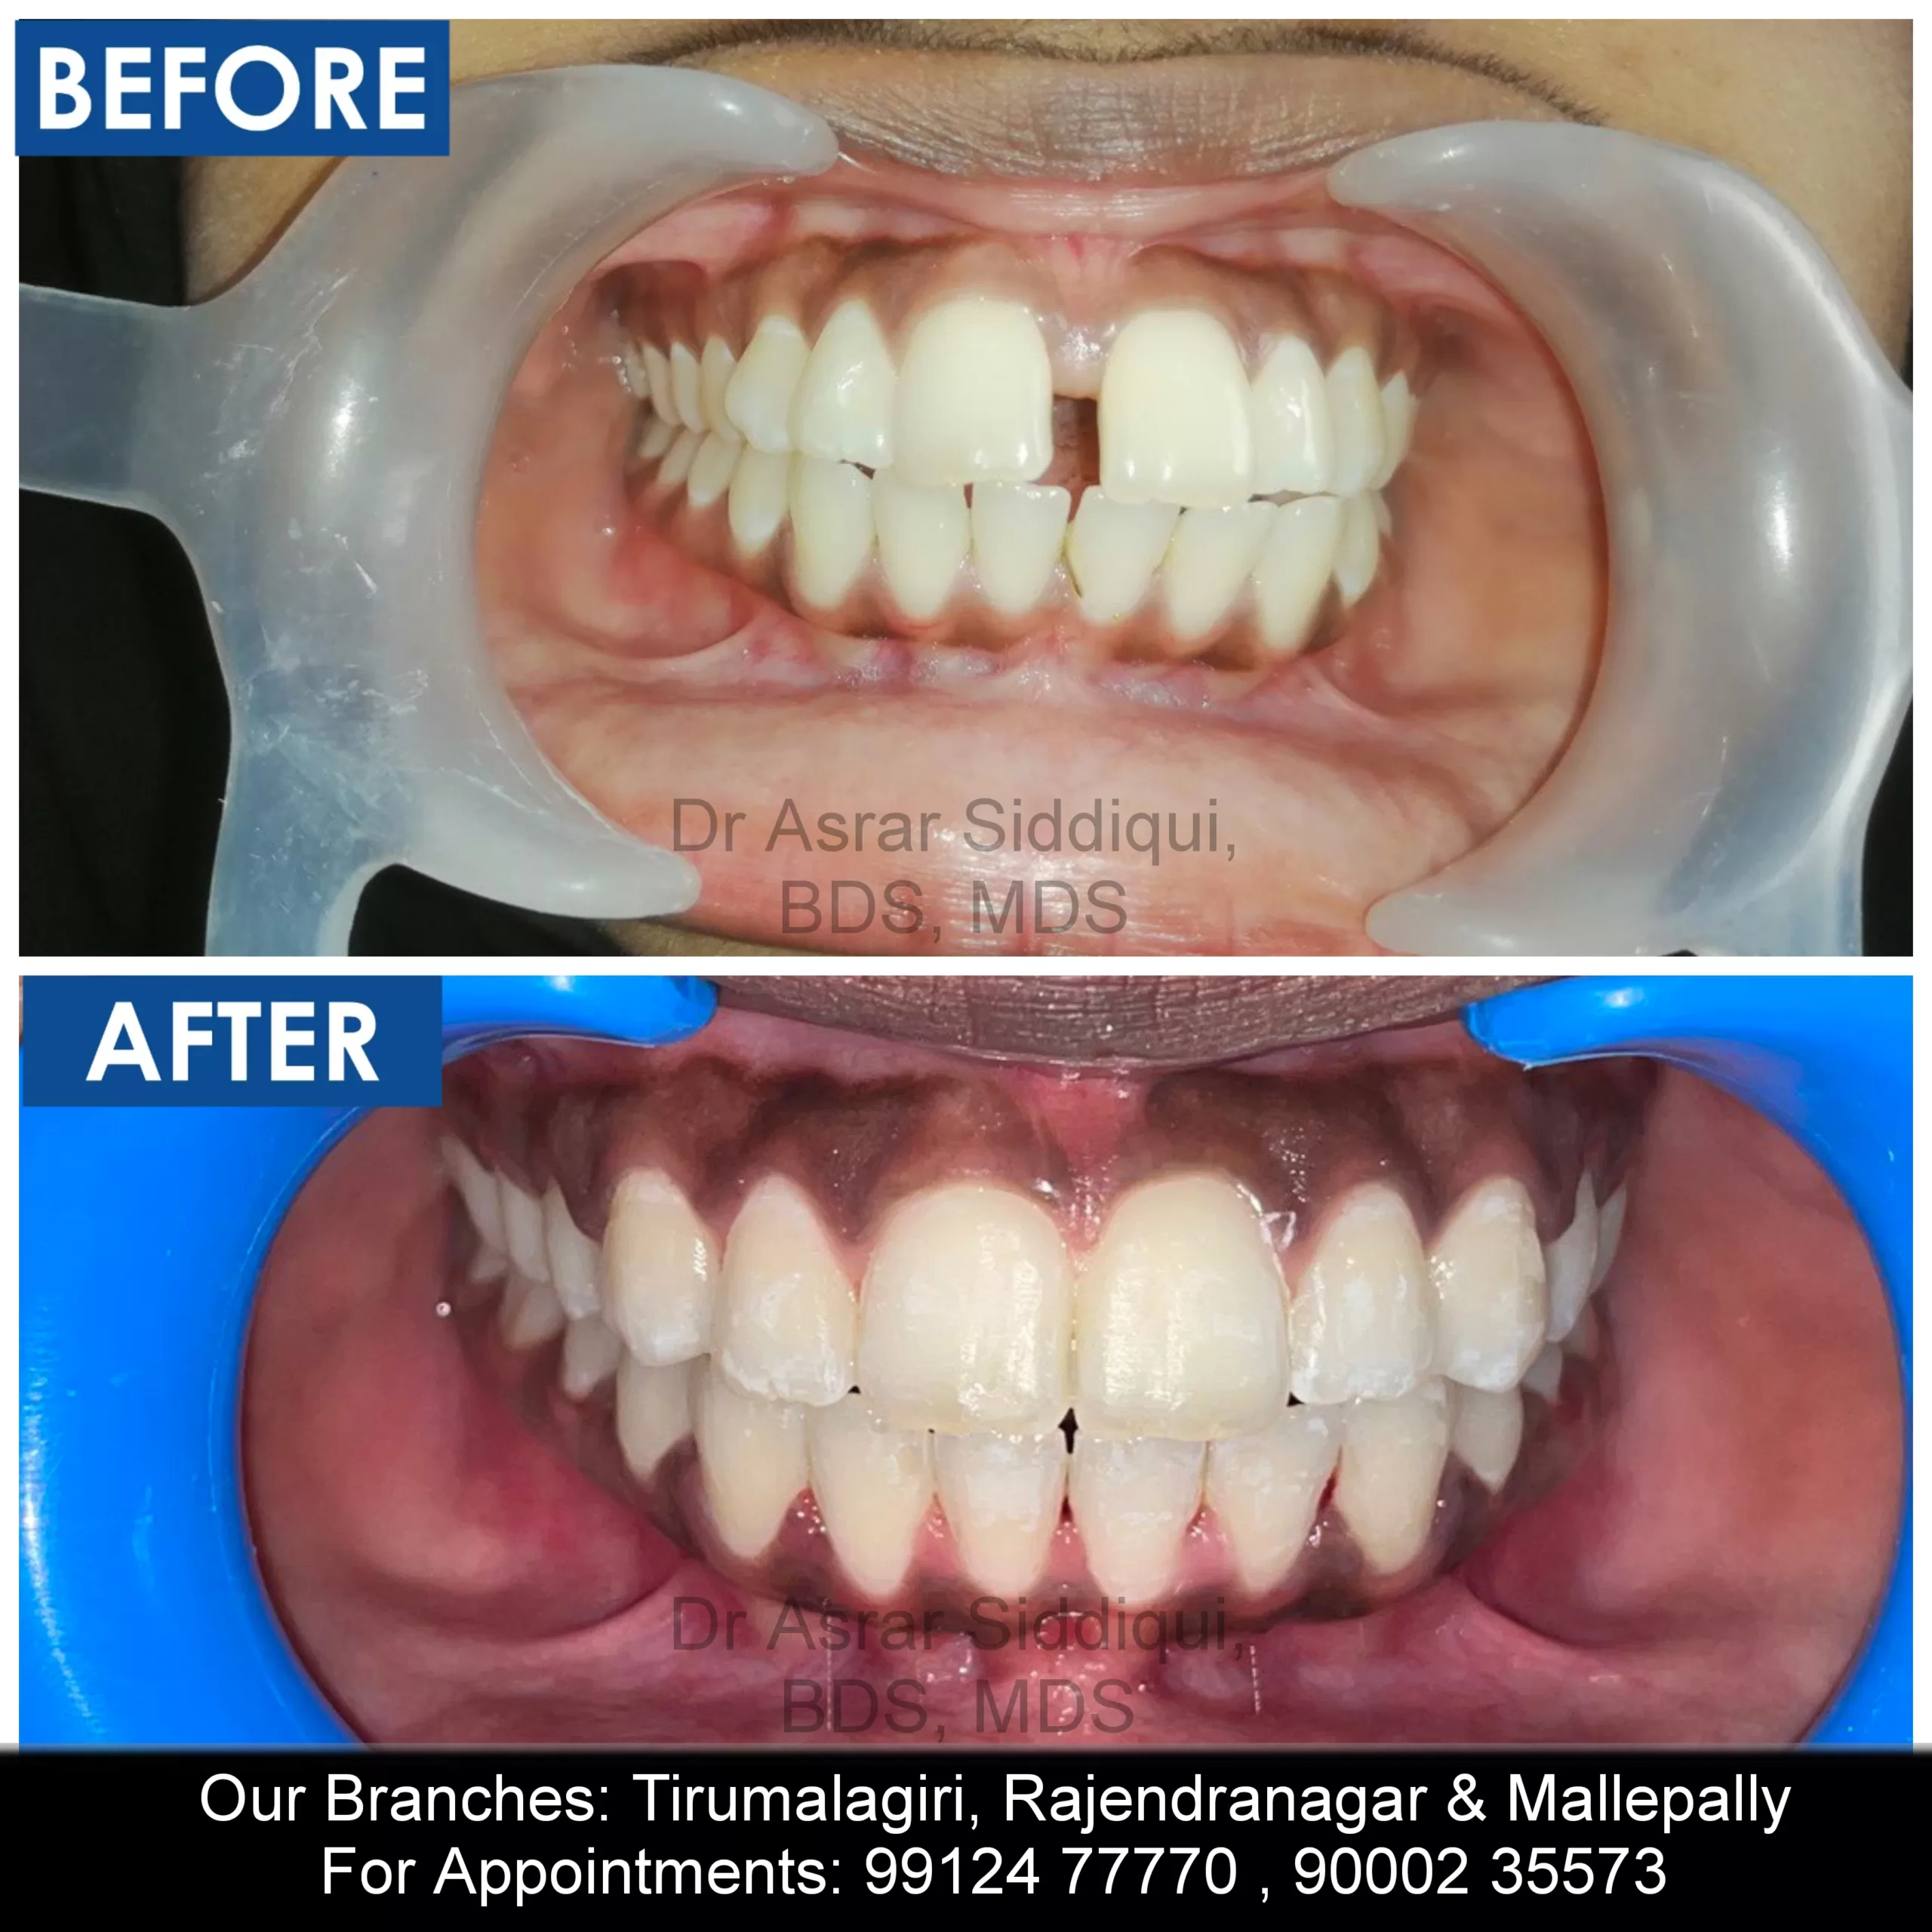 Teeth Spacing Treatment in Hyderabad, Brace Dental